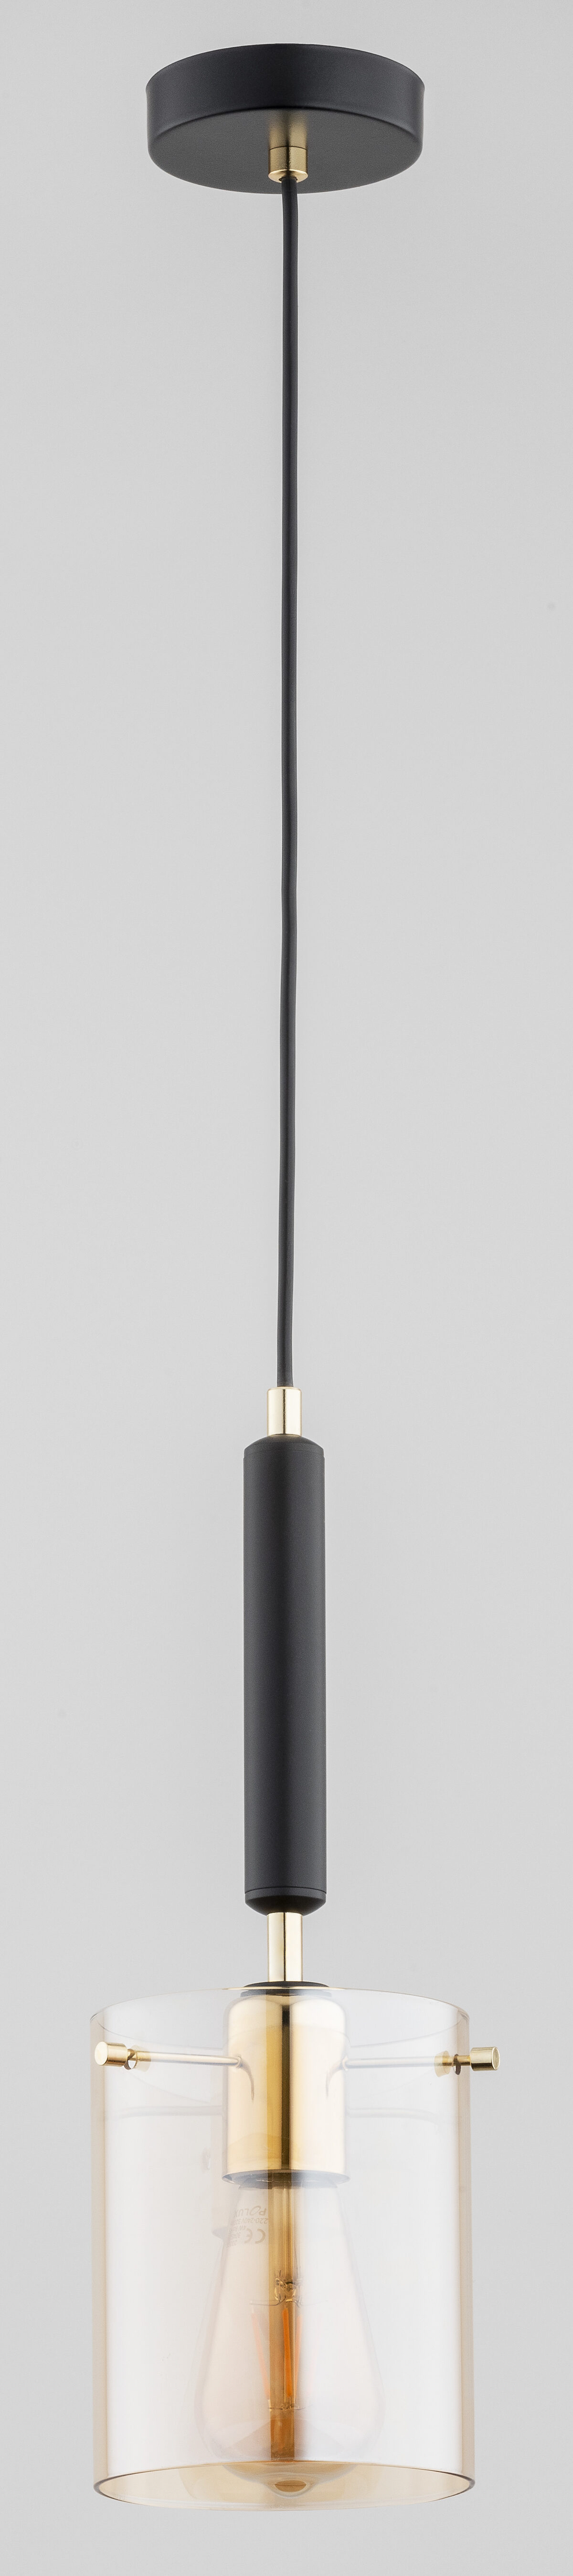 Lampa wisząca 1 punktowa ze szklanym kloszem. Elementy metalowe wykończone w kolorze czarnym.